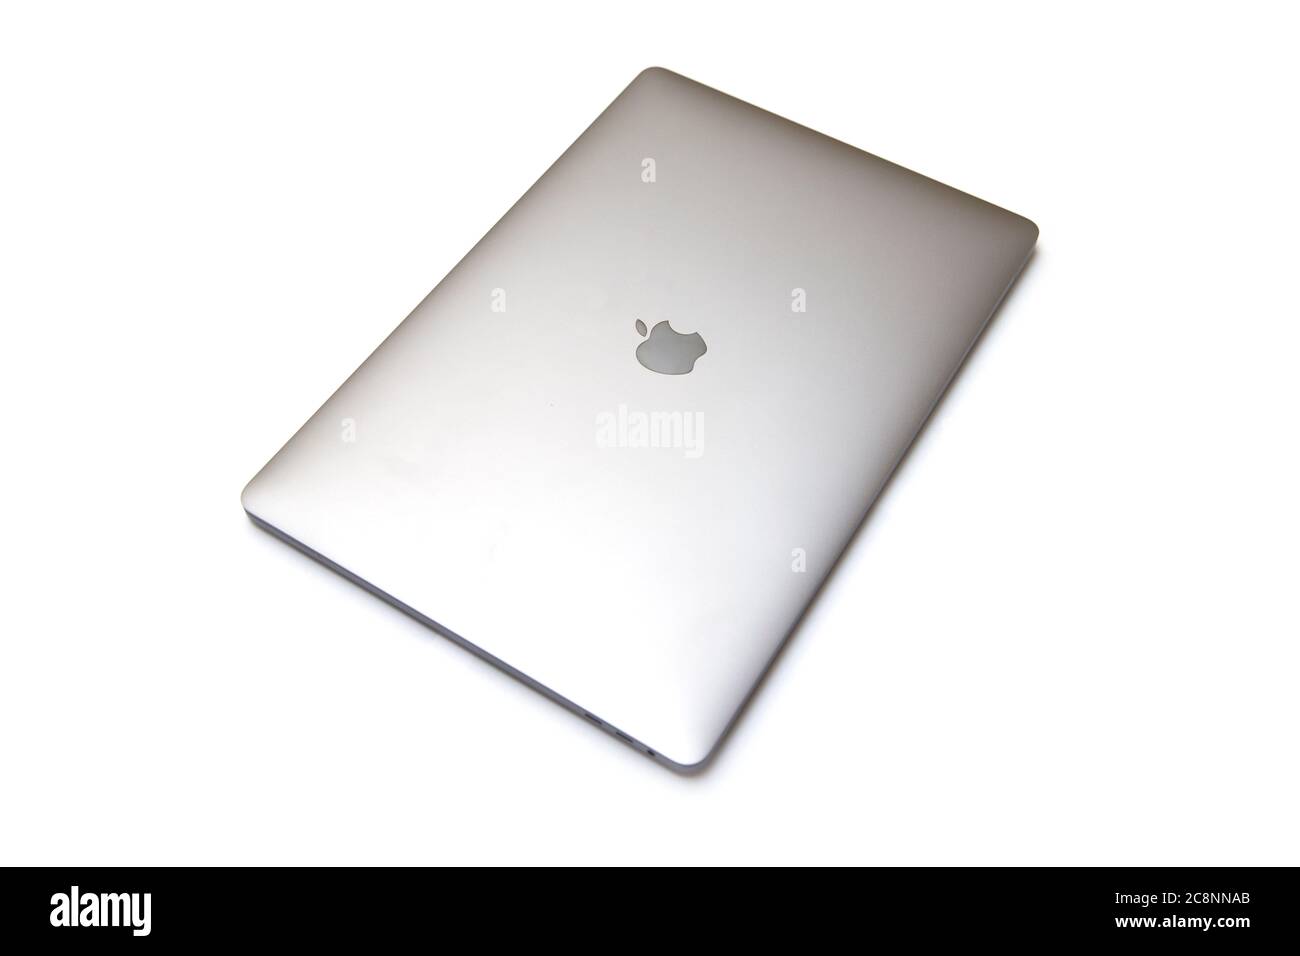 BELGRADE, SERBIE - 18 JUILLET 2020 : ordinateur MacBook isolé sur blanc. Le MacBook est une marque d'ordinateurs portables fabriqués par Apple Inc Banque D'Images